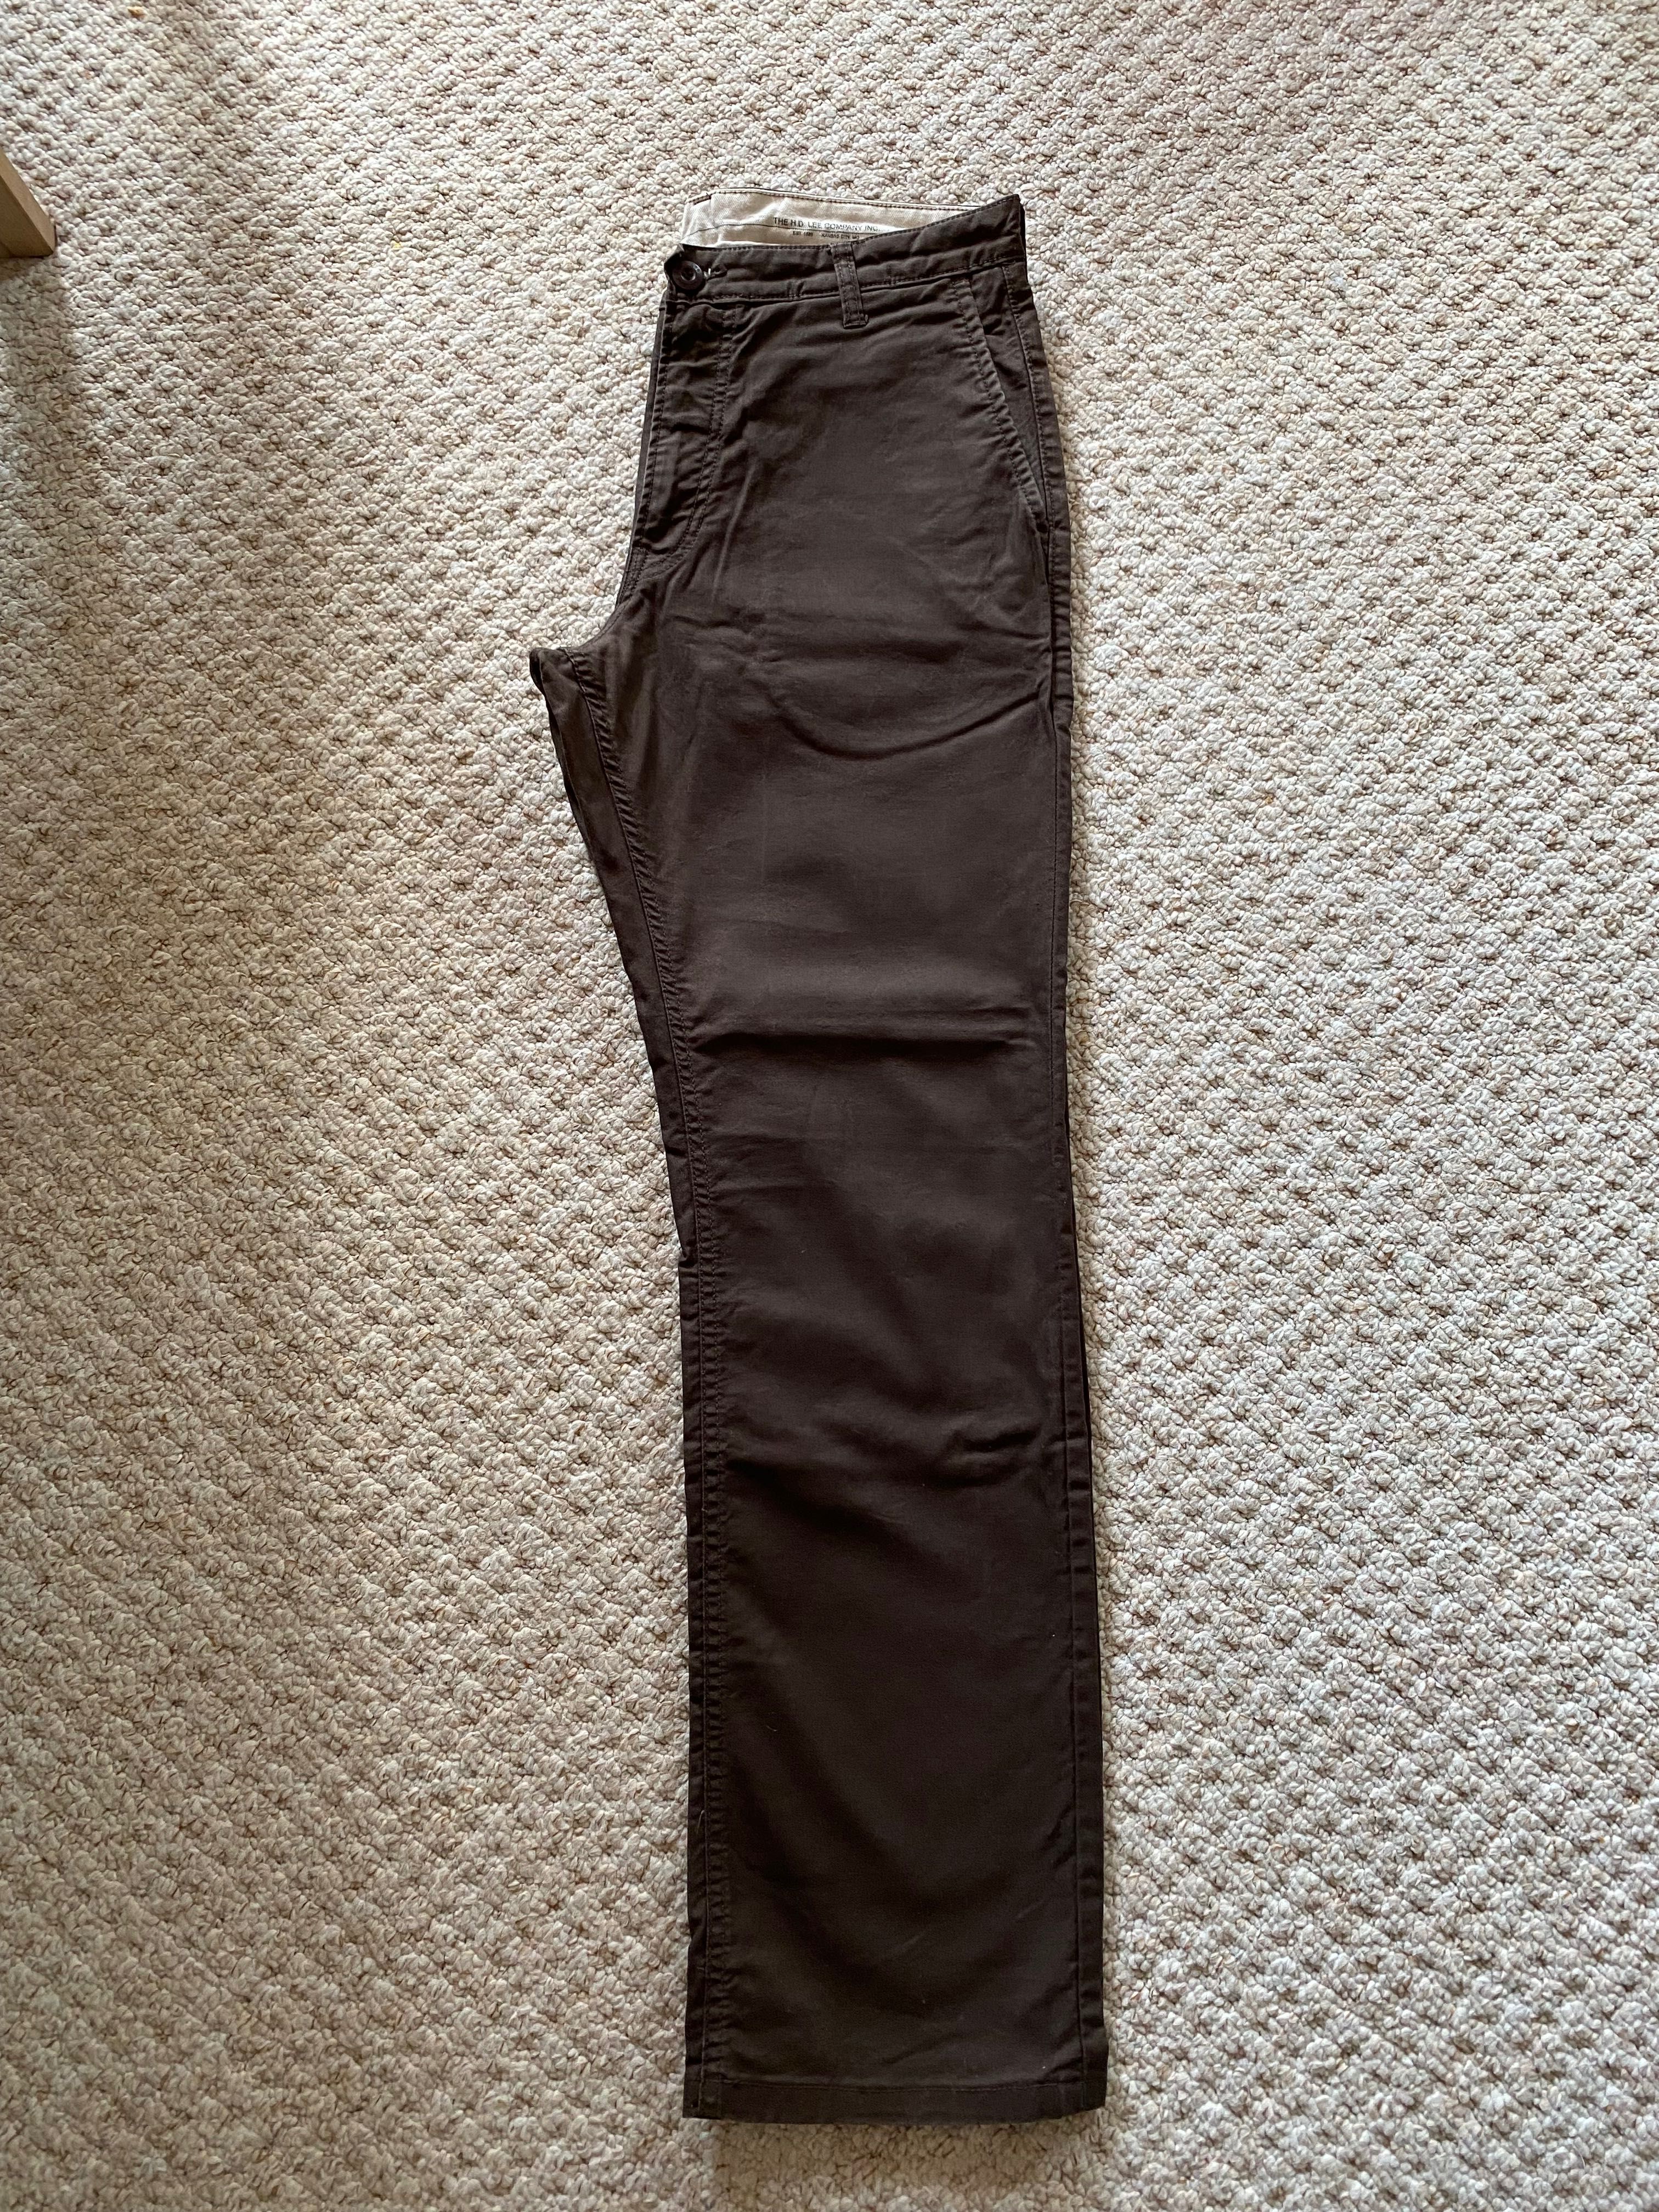 Oryginalne Spodnie męskie Lee W30 L32 jeansy szorty spodenki